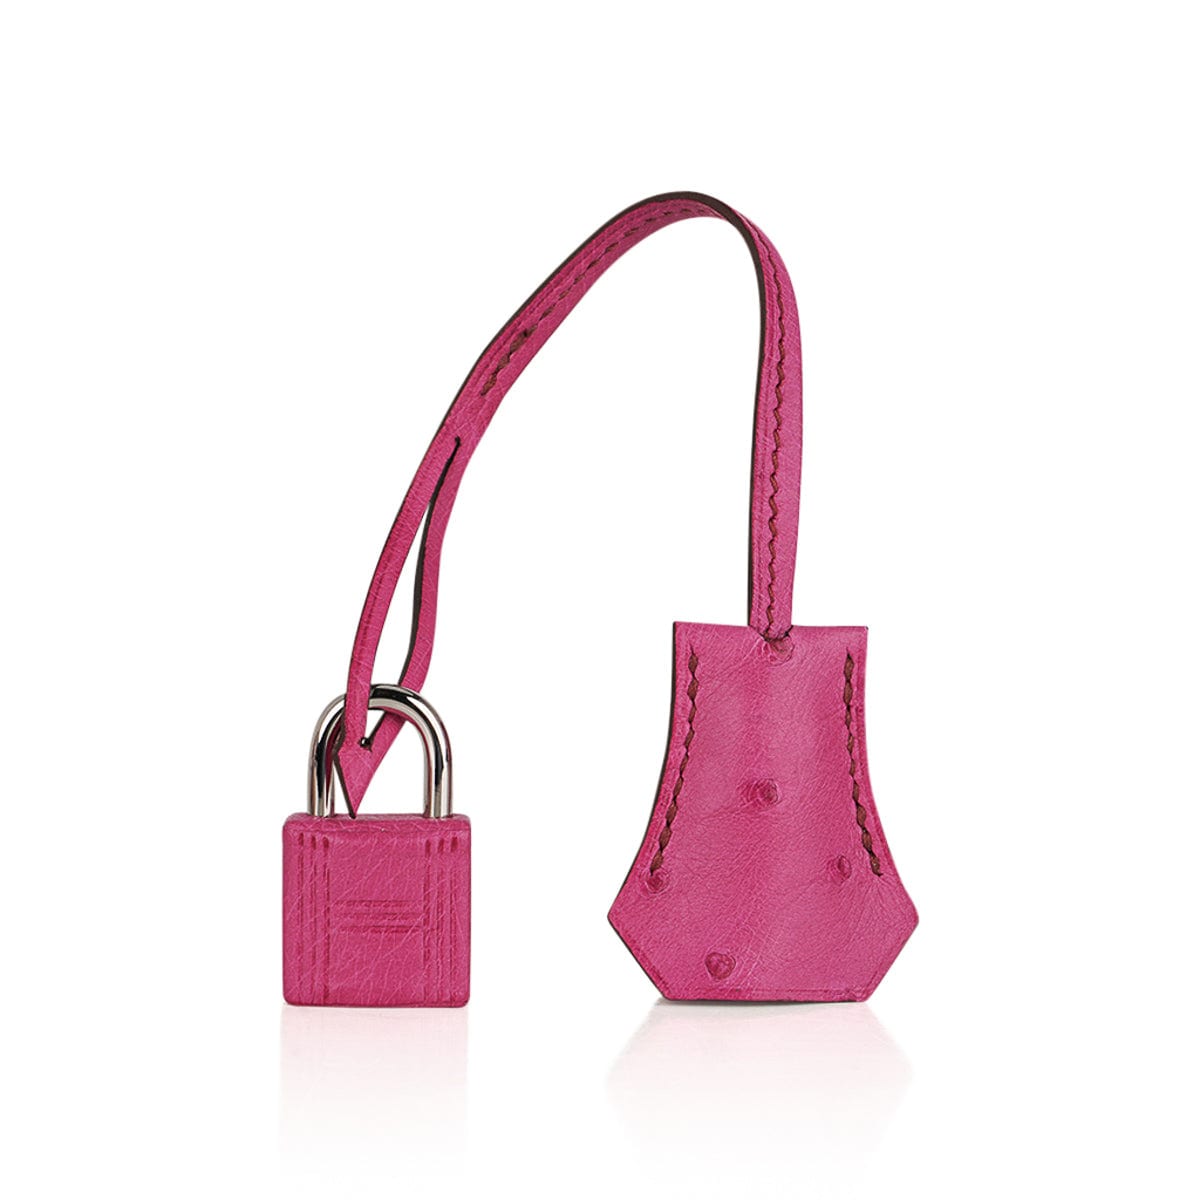 Hermès - Authenticated Birkin 25 Handbag - Ostrich Black for Women, Never Worn